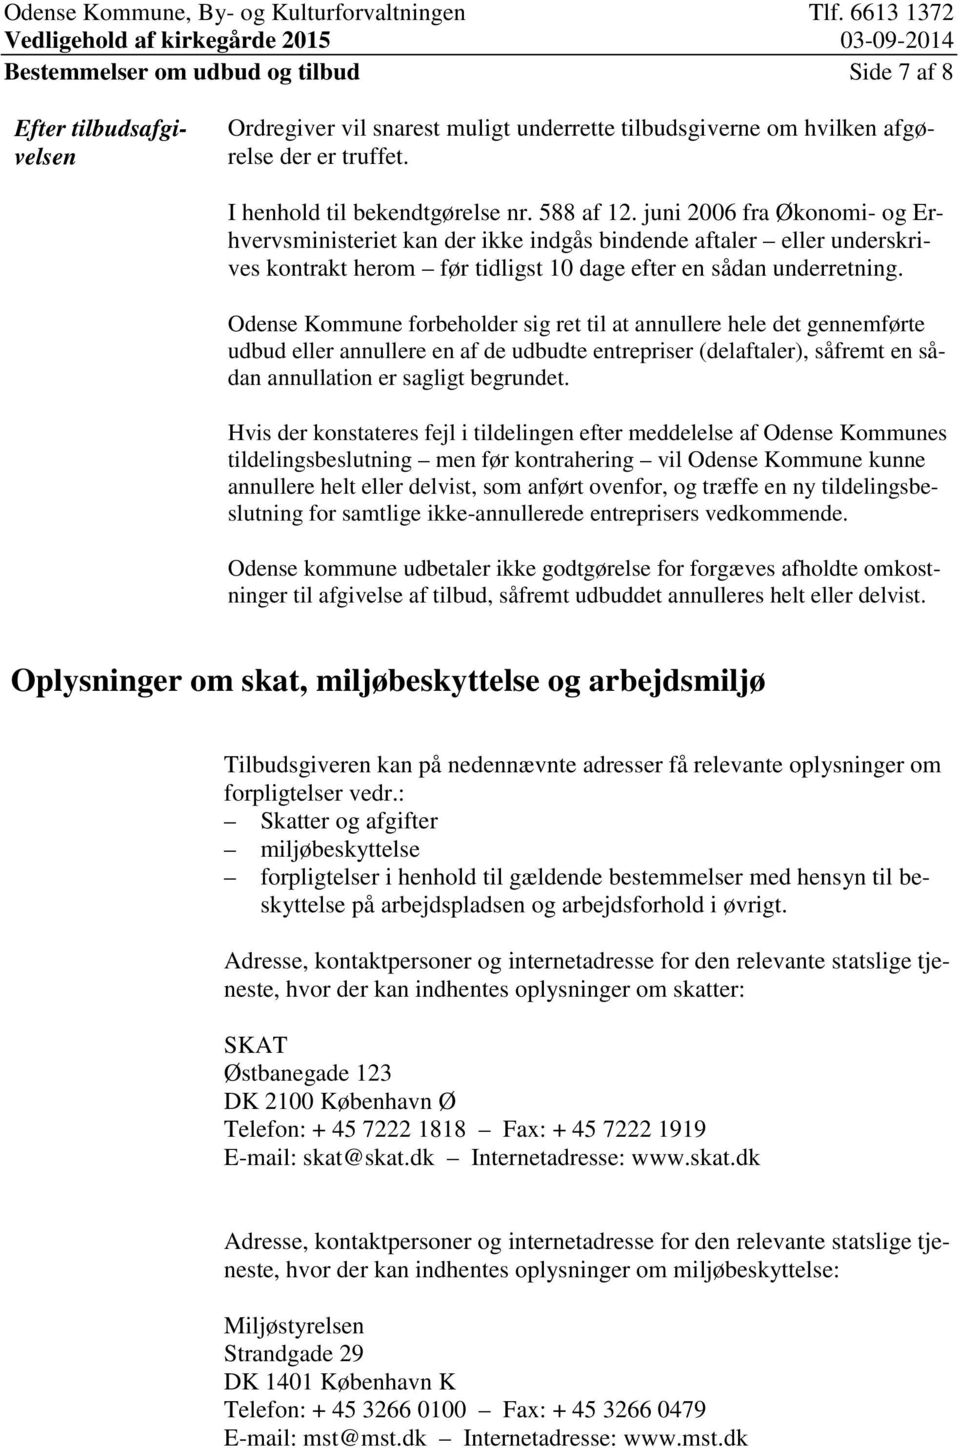 Odense Kommune forbeholder sig ret til at annullere hele det gennemførte udbud eller annullere en af de udbudte entrepriser (delaftaler), såfremt en sådan annullation er sagligt begrundet.